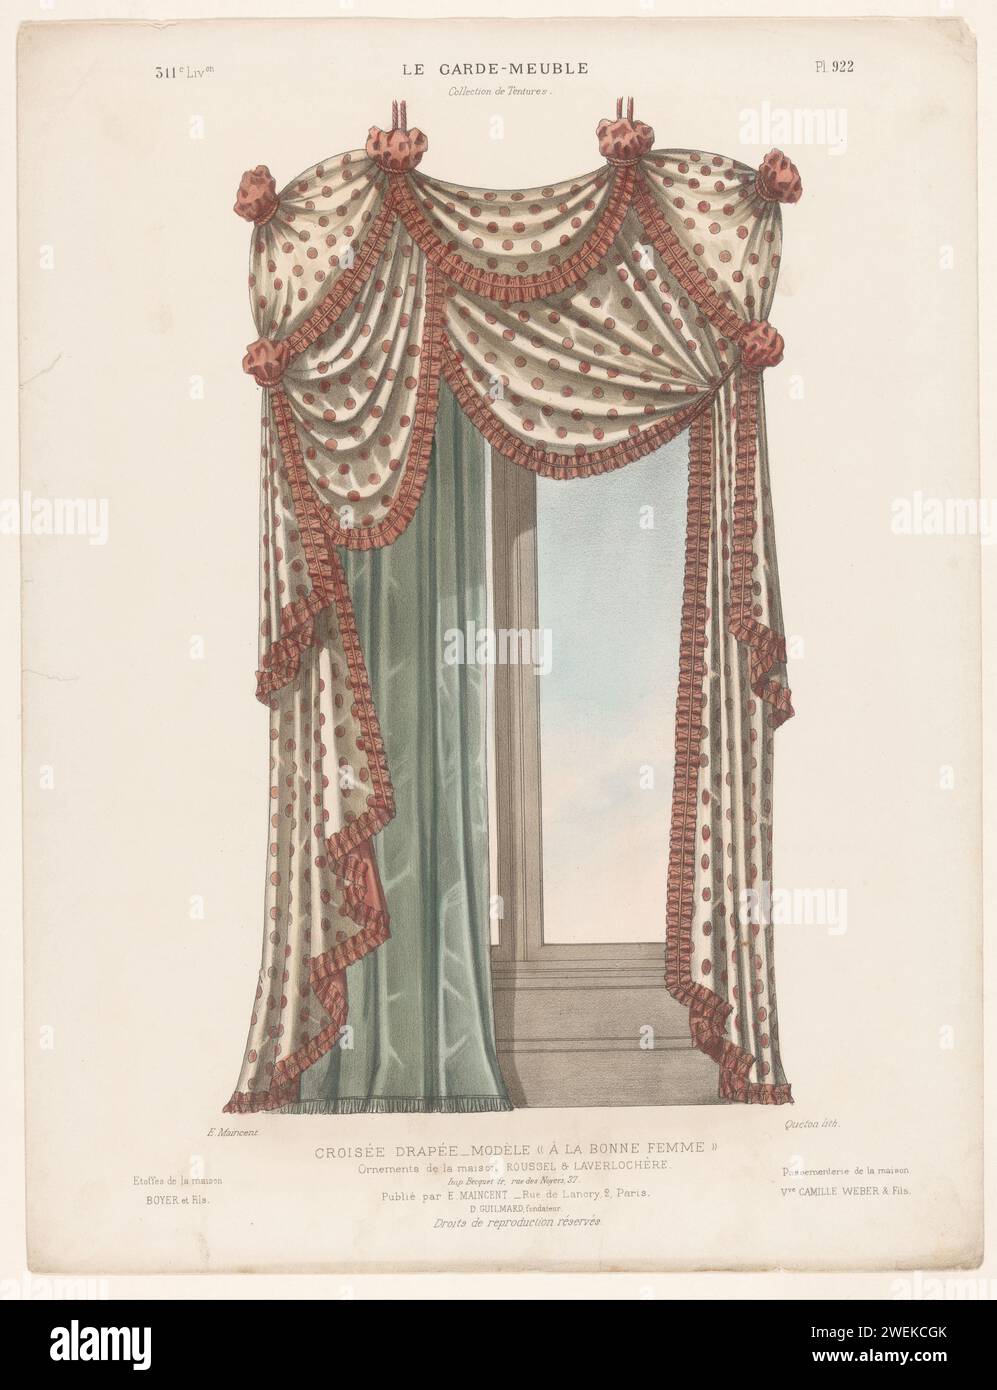 Fenster mit Vorhang, Quéton, nach Eugène MAINCEN, ca. 1885 - ca. 1895 Druck Kreuzfenster mit Vorhängen. Drucken von 311. Livraison. Papierbehänge und Vorhänge. Fenster Stockfoto